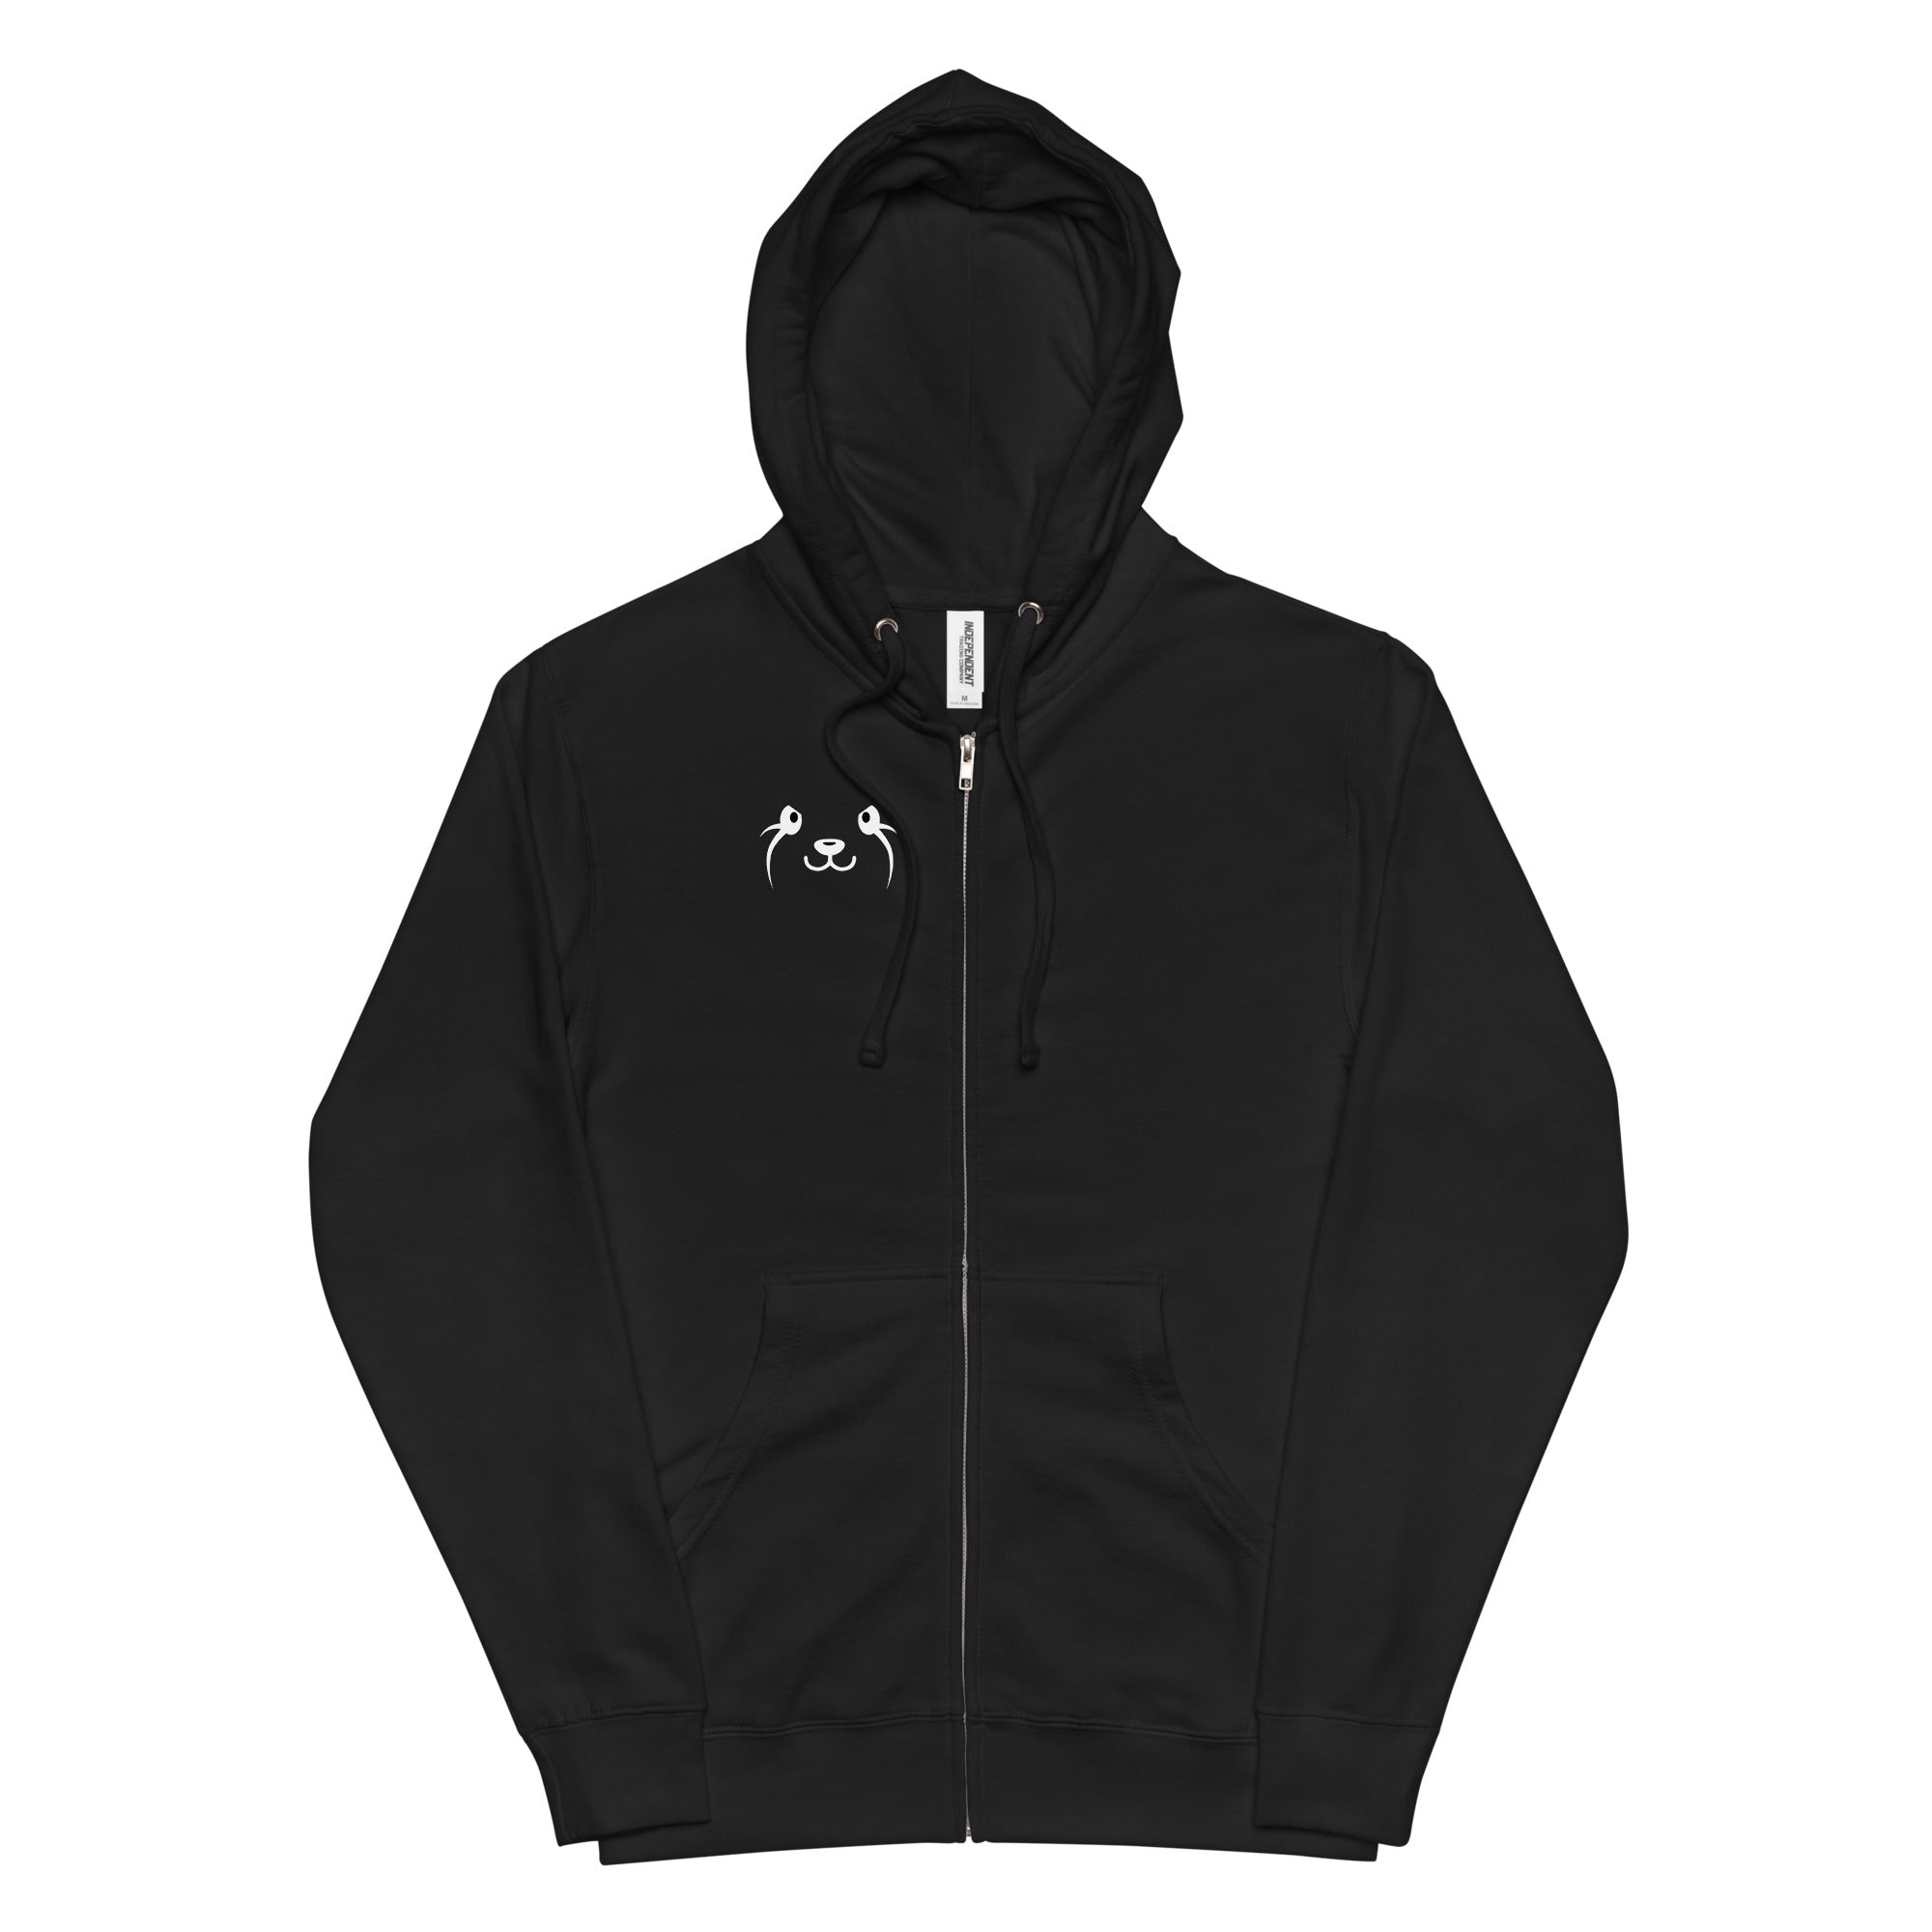 FLOKI Black N' Orange fleece zip up hoodie